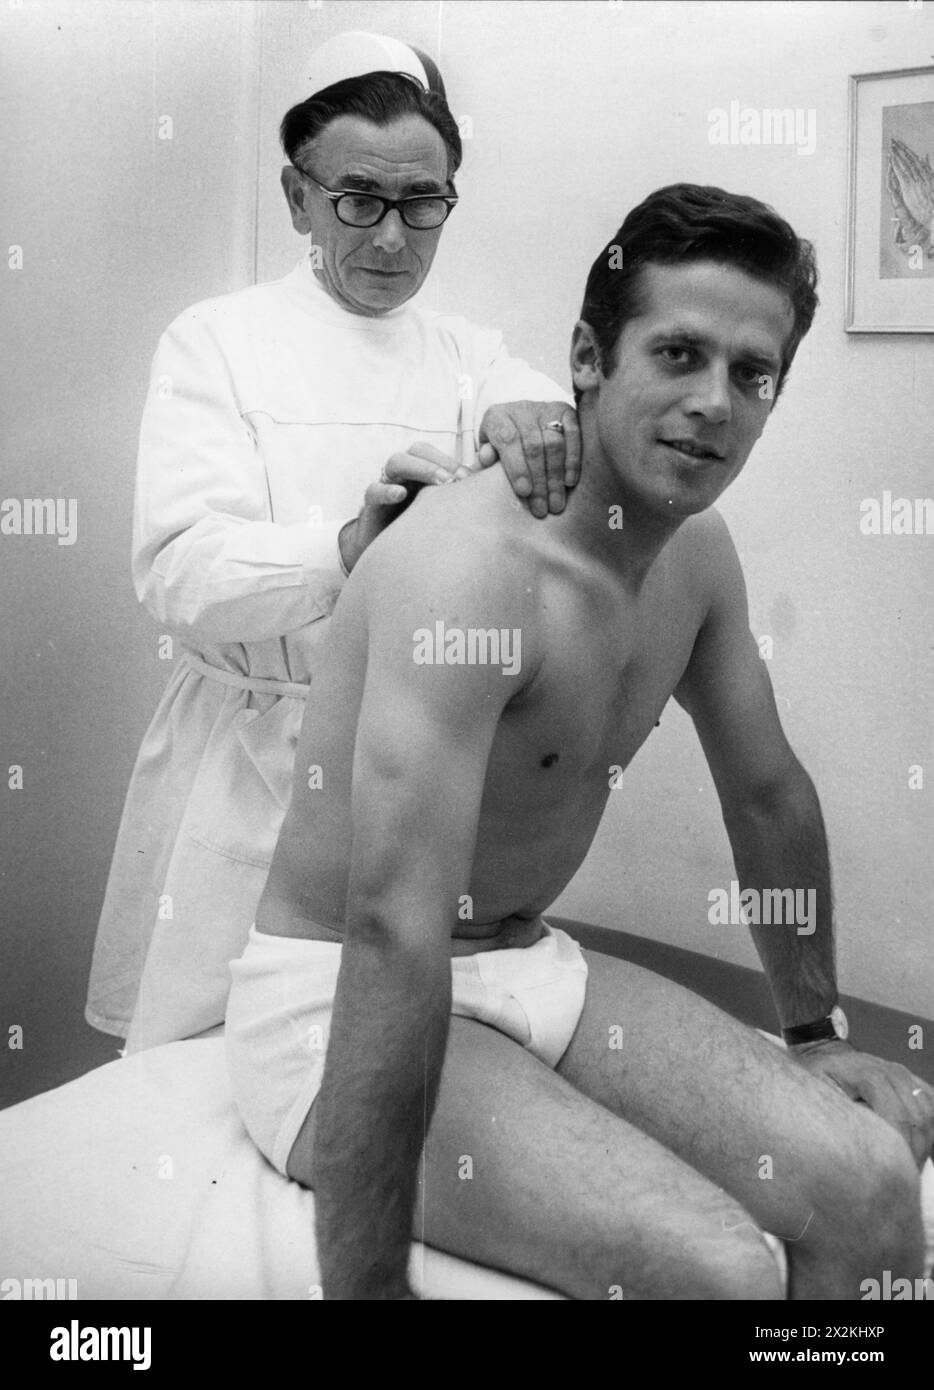 Schockemoehle, Alwin, * 29.5,1937, jockey tedesco, trattamento speciale di Unite masseur, Berlino, DIRITTI AGGIUNTIVI-CLEARANCE-INFO-NON-DISPONIBILE Foto Stock